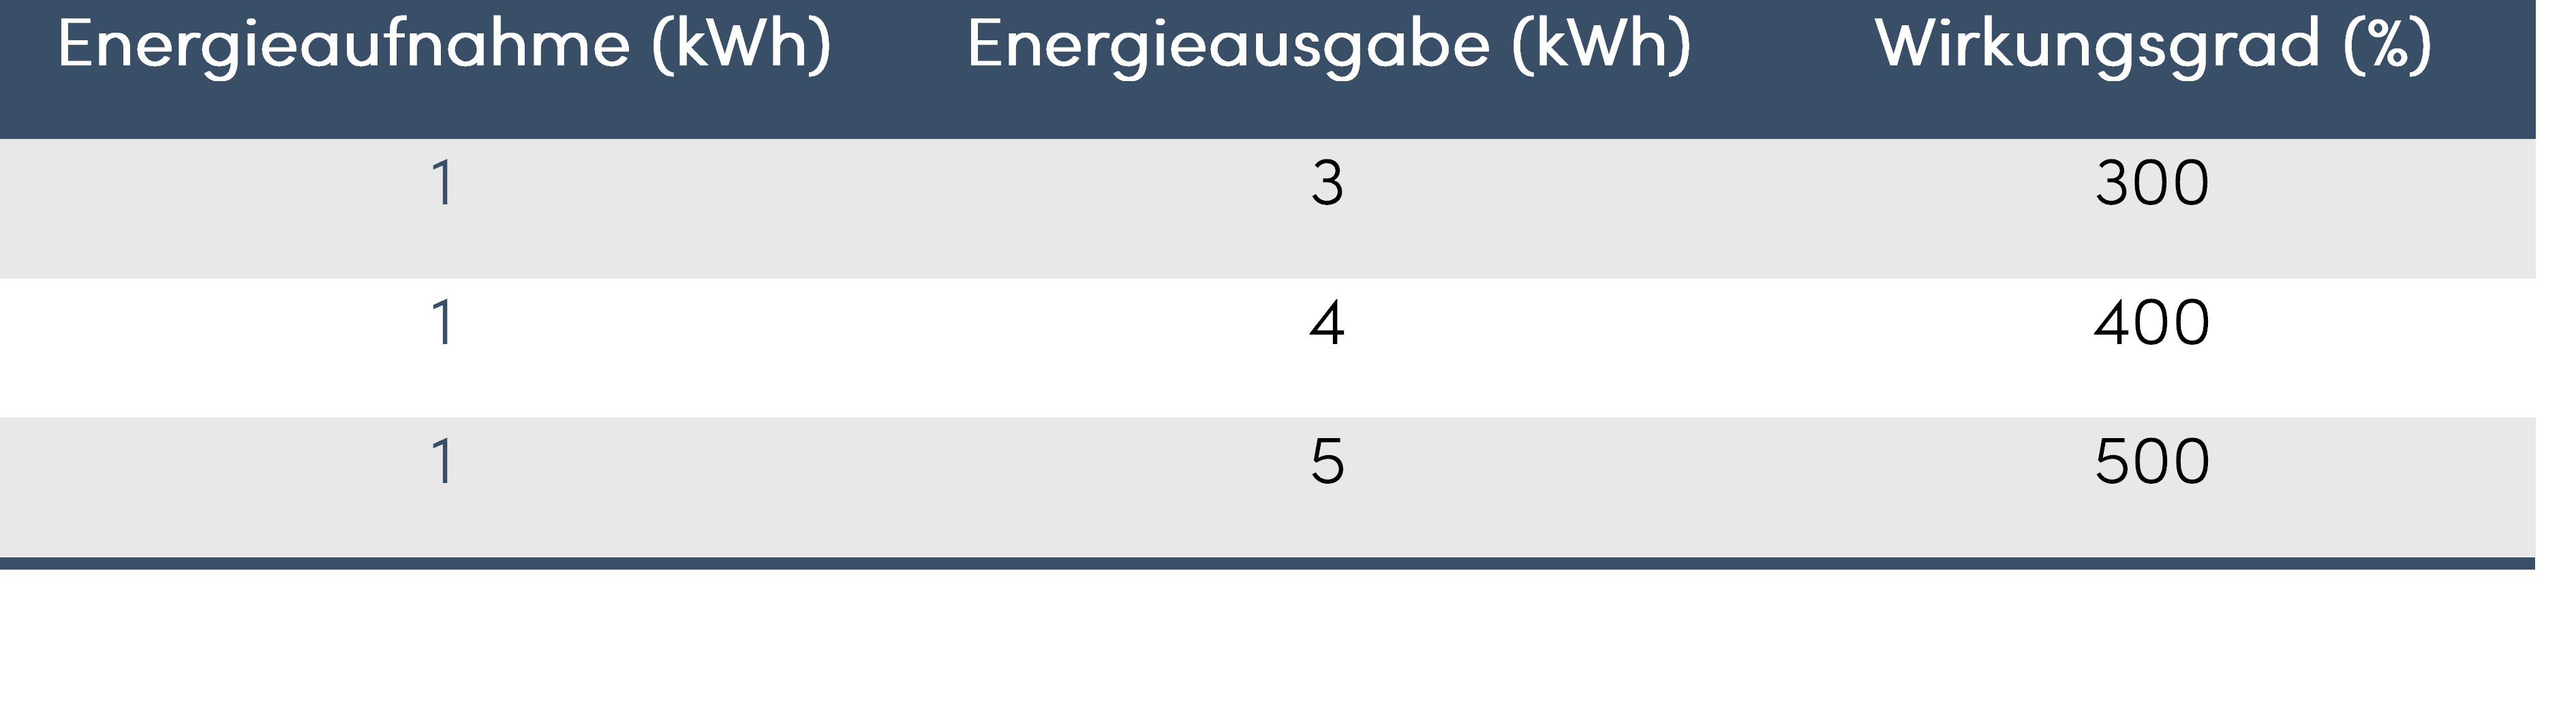 Wirkungsgrad Wärmepumpe Tabelle 1